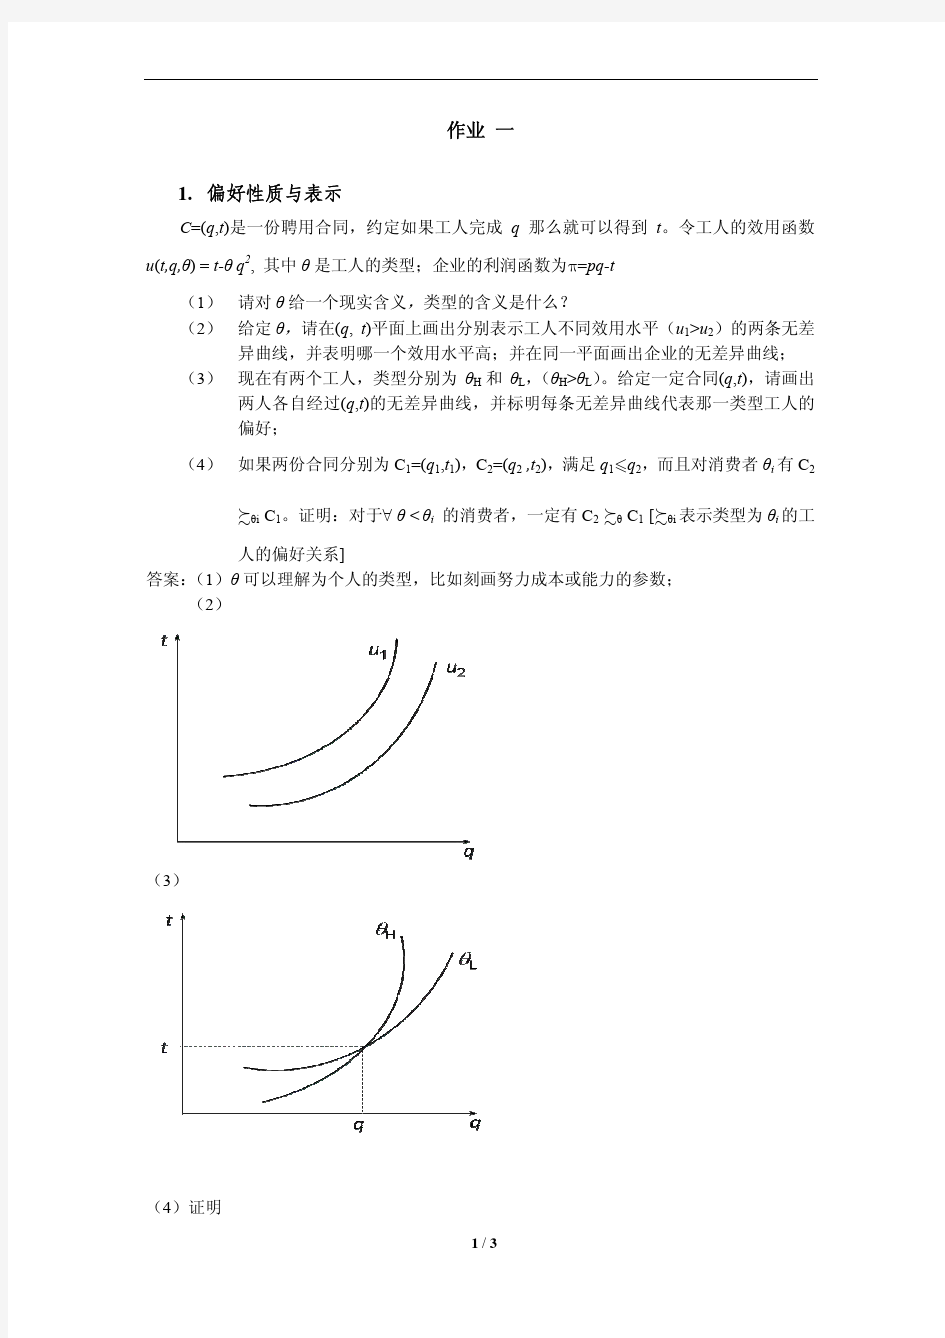 上海财经大学经济学院《高级微观经济学》题库2